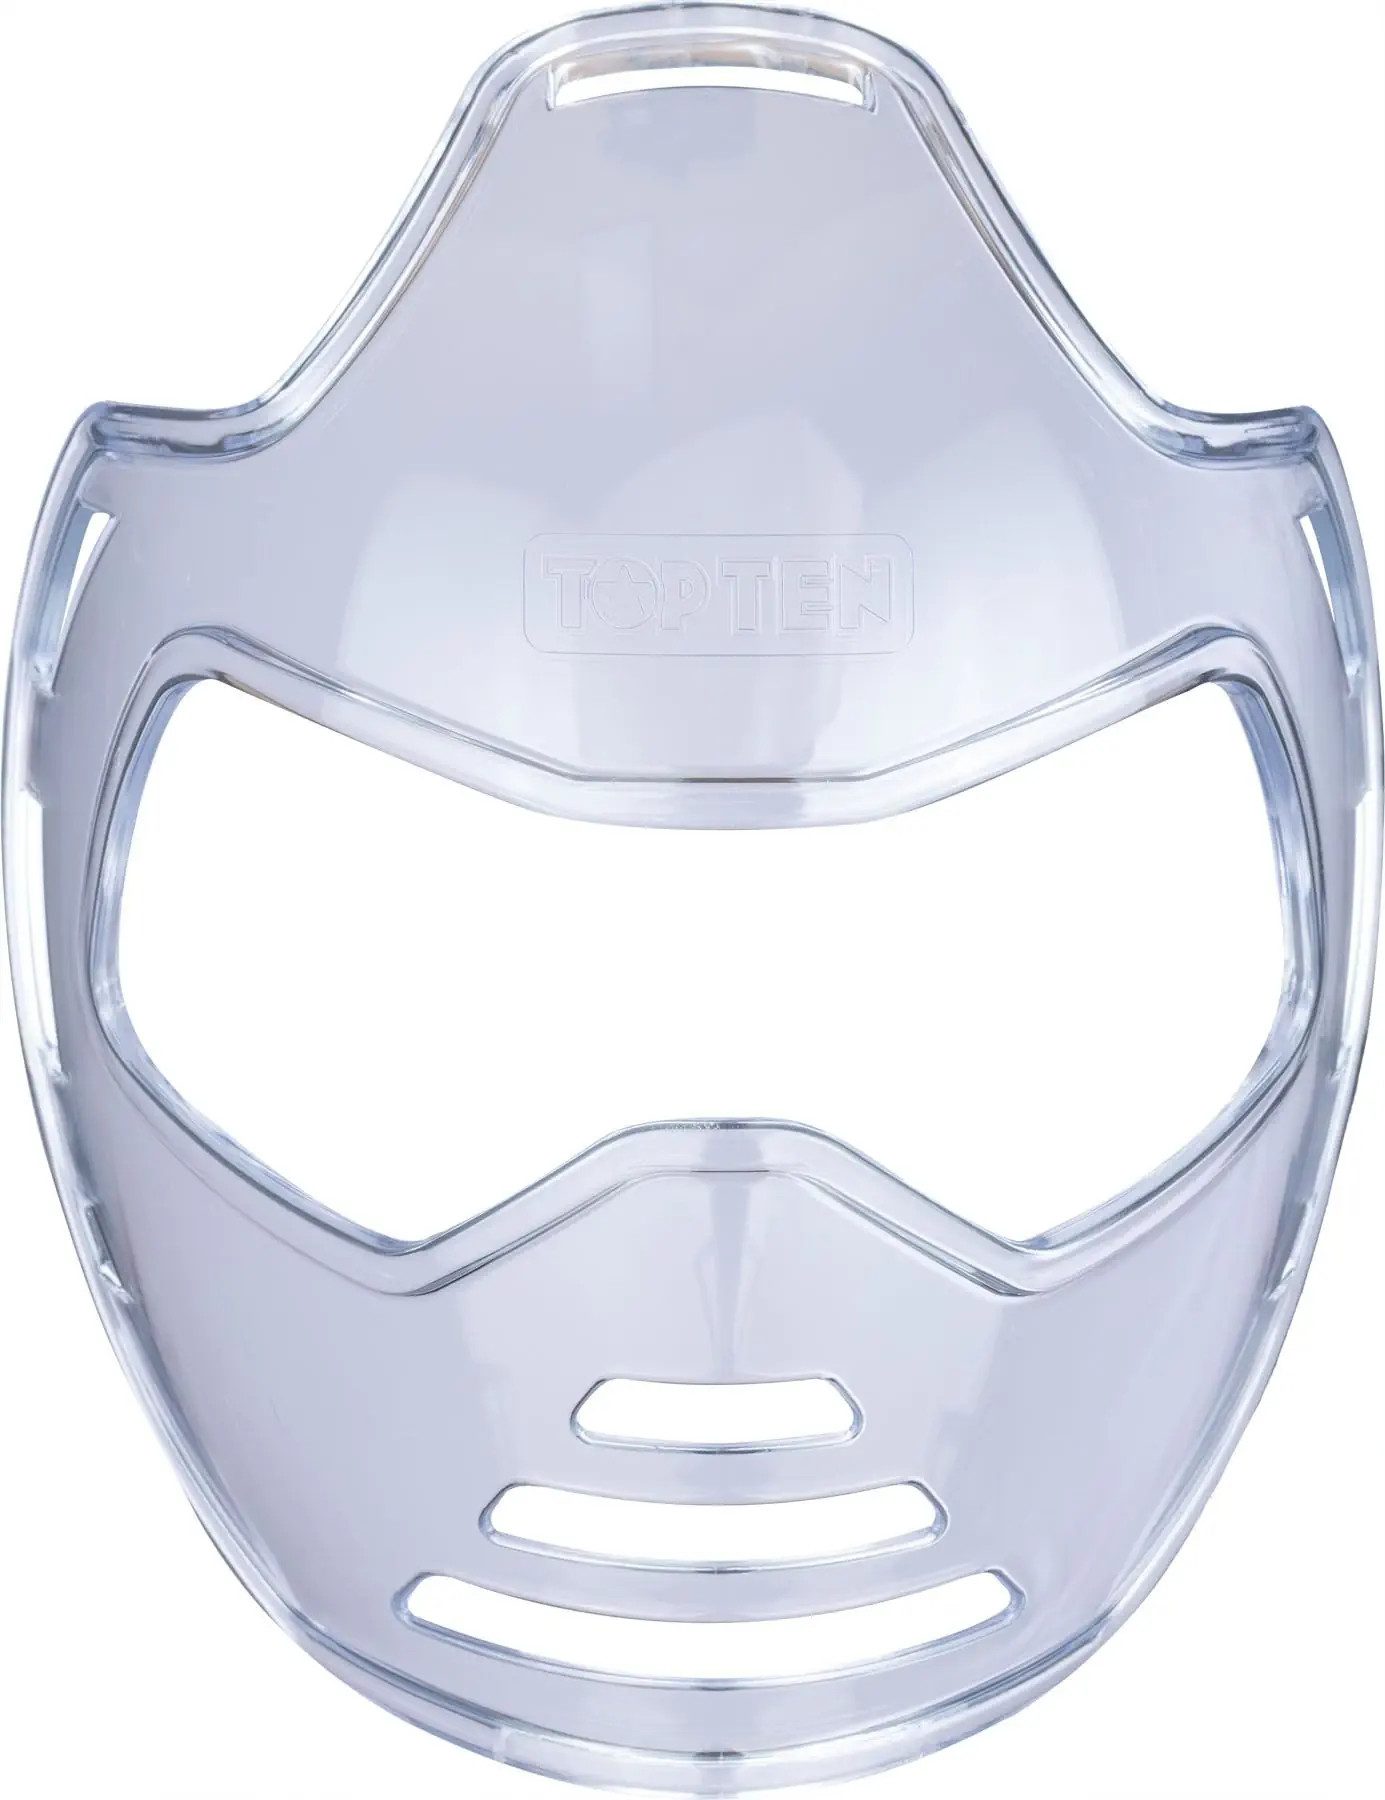 Top Ten Kopfschutz Gesichtsmaske SafeStrike für Kopfschutz Avantgarde Plexi Visier Maske (Stück, WAKO approved), bruchsicheres Polycarbonat, transparent für uneingeschränkte Sicht